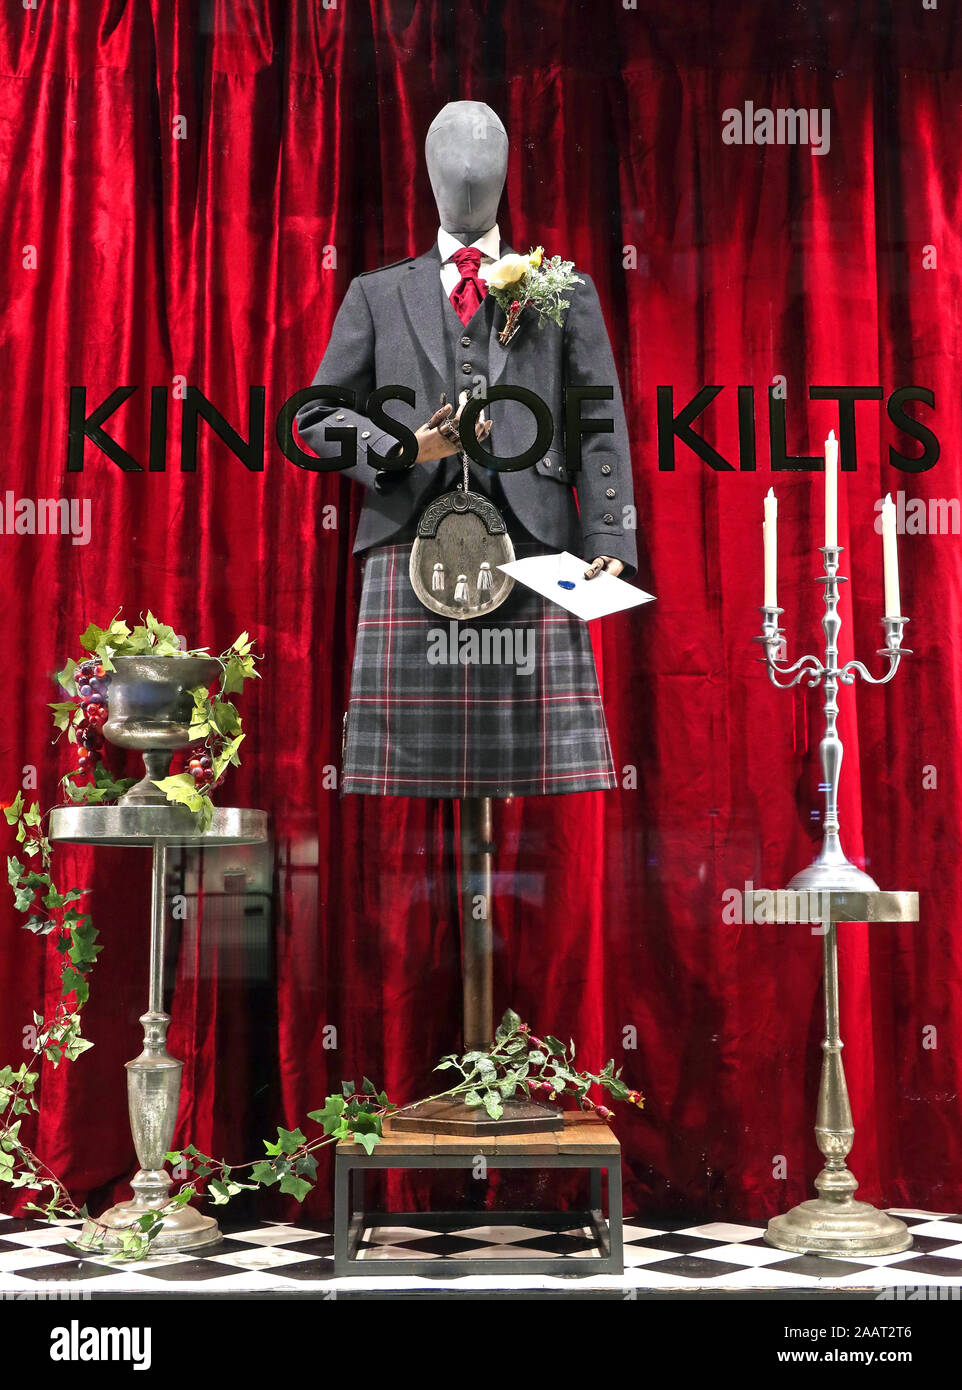 Kings of kilts shop, 39 - 41 Bath Street, Glasgow, Écosse, Royaume-Uni G2 1HW, Kilt Store, MacGregor et MacDuff - tenue vestimentaire Highland Banque D'Images